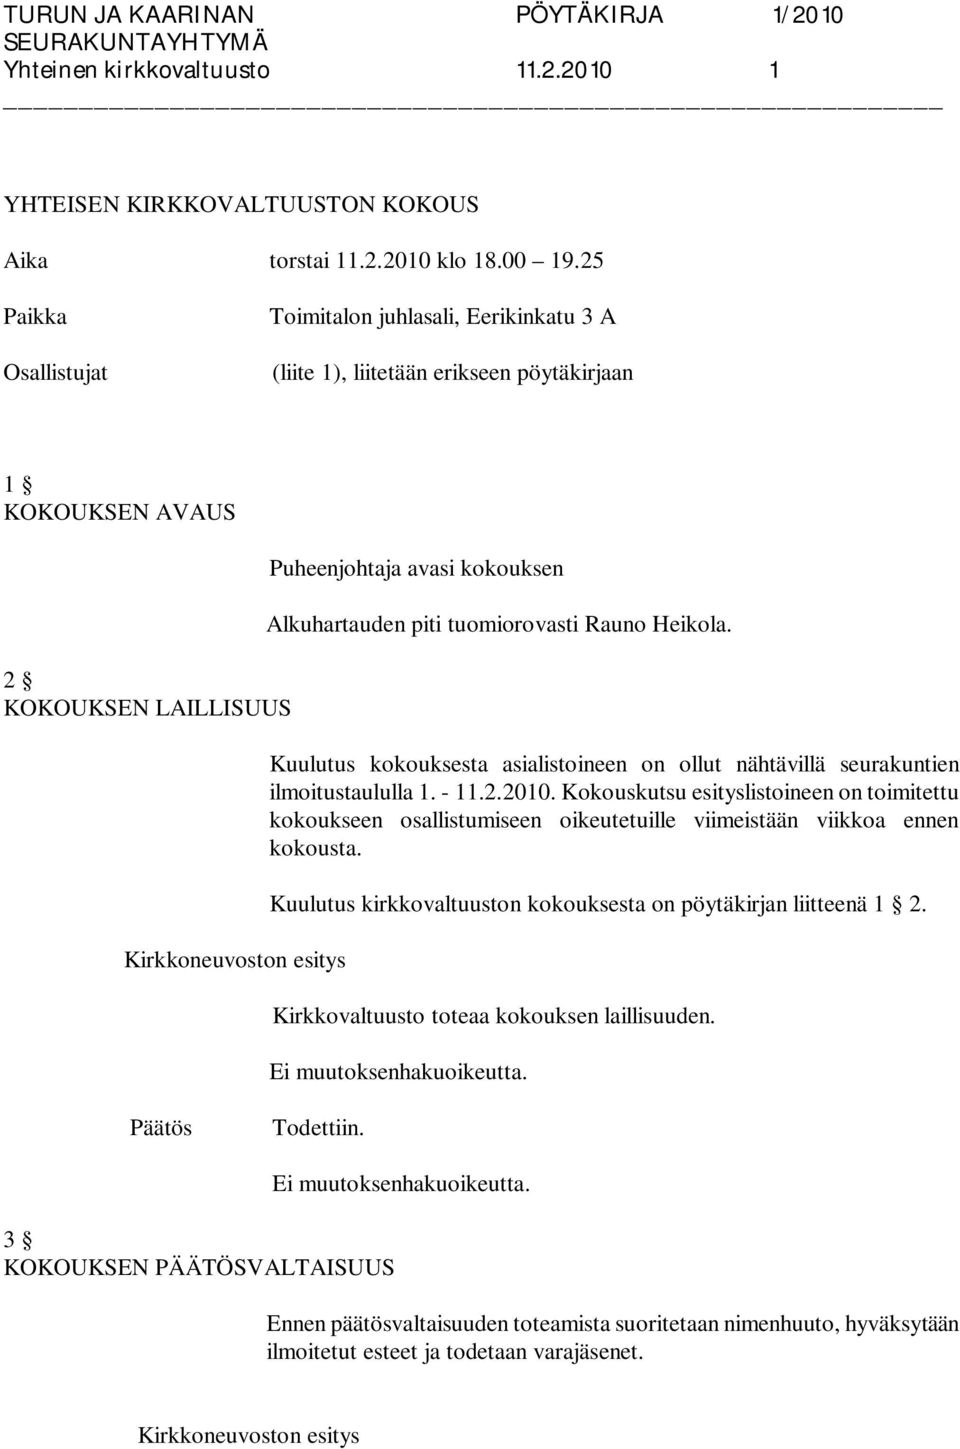 Alkuhartauden piti tuomiorovasti Rauno Heikola. Kuulutus kokouksesta asialistoineen on ollut nähtävillä seurakuntien ilmoitustaululla 1. - 11.2.2010.